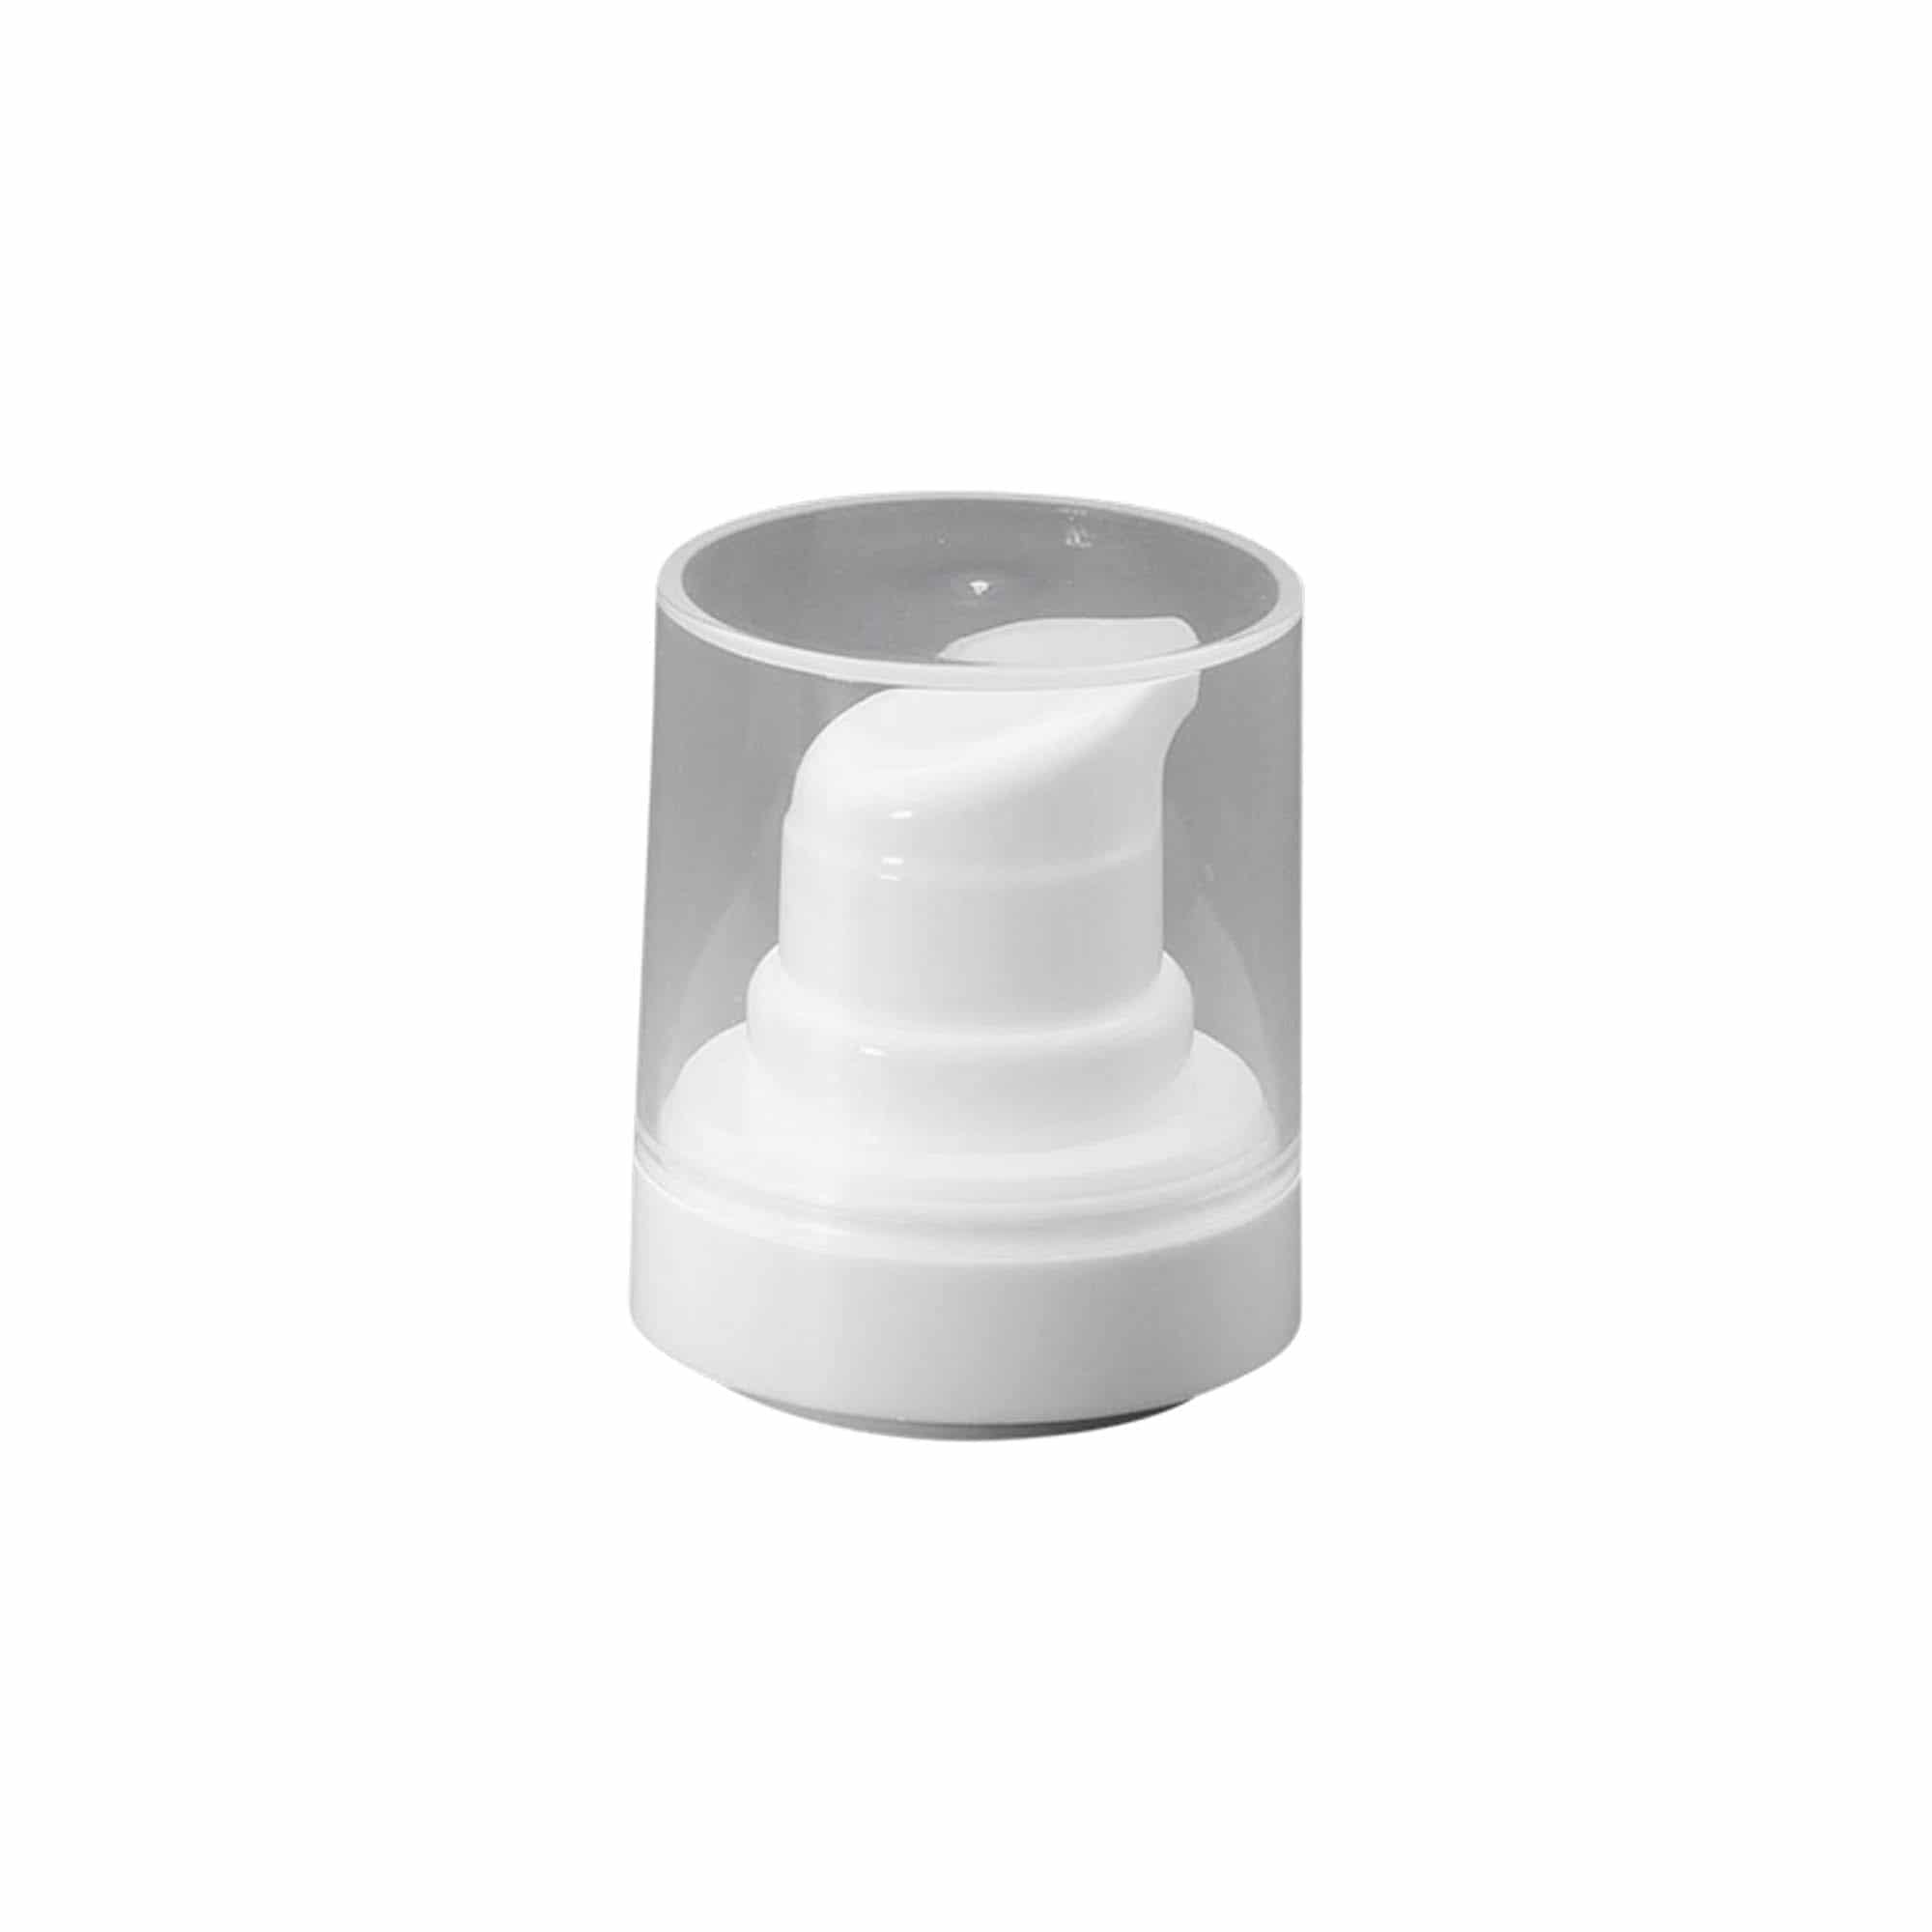 Pompkop voor Airless Dispenser 'Micro', PP-kunststof, wit